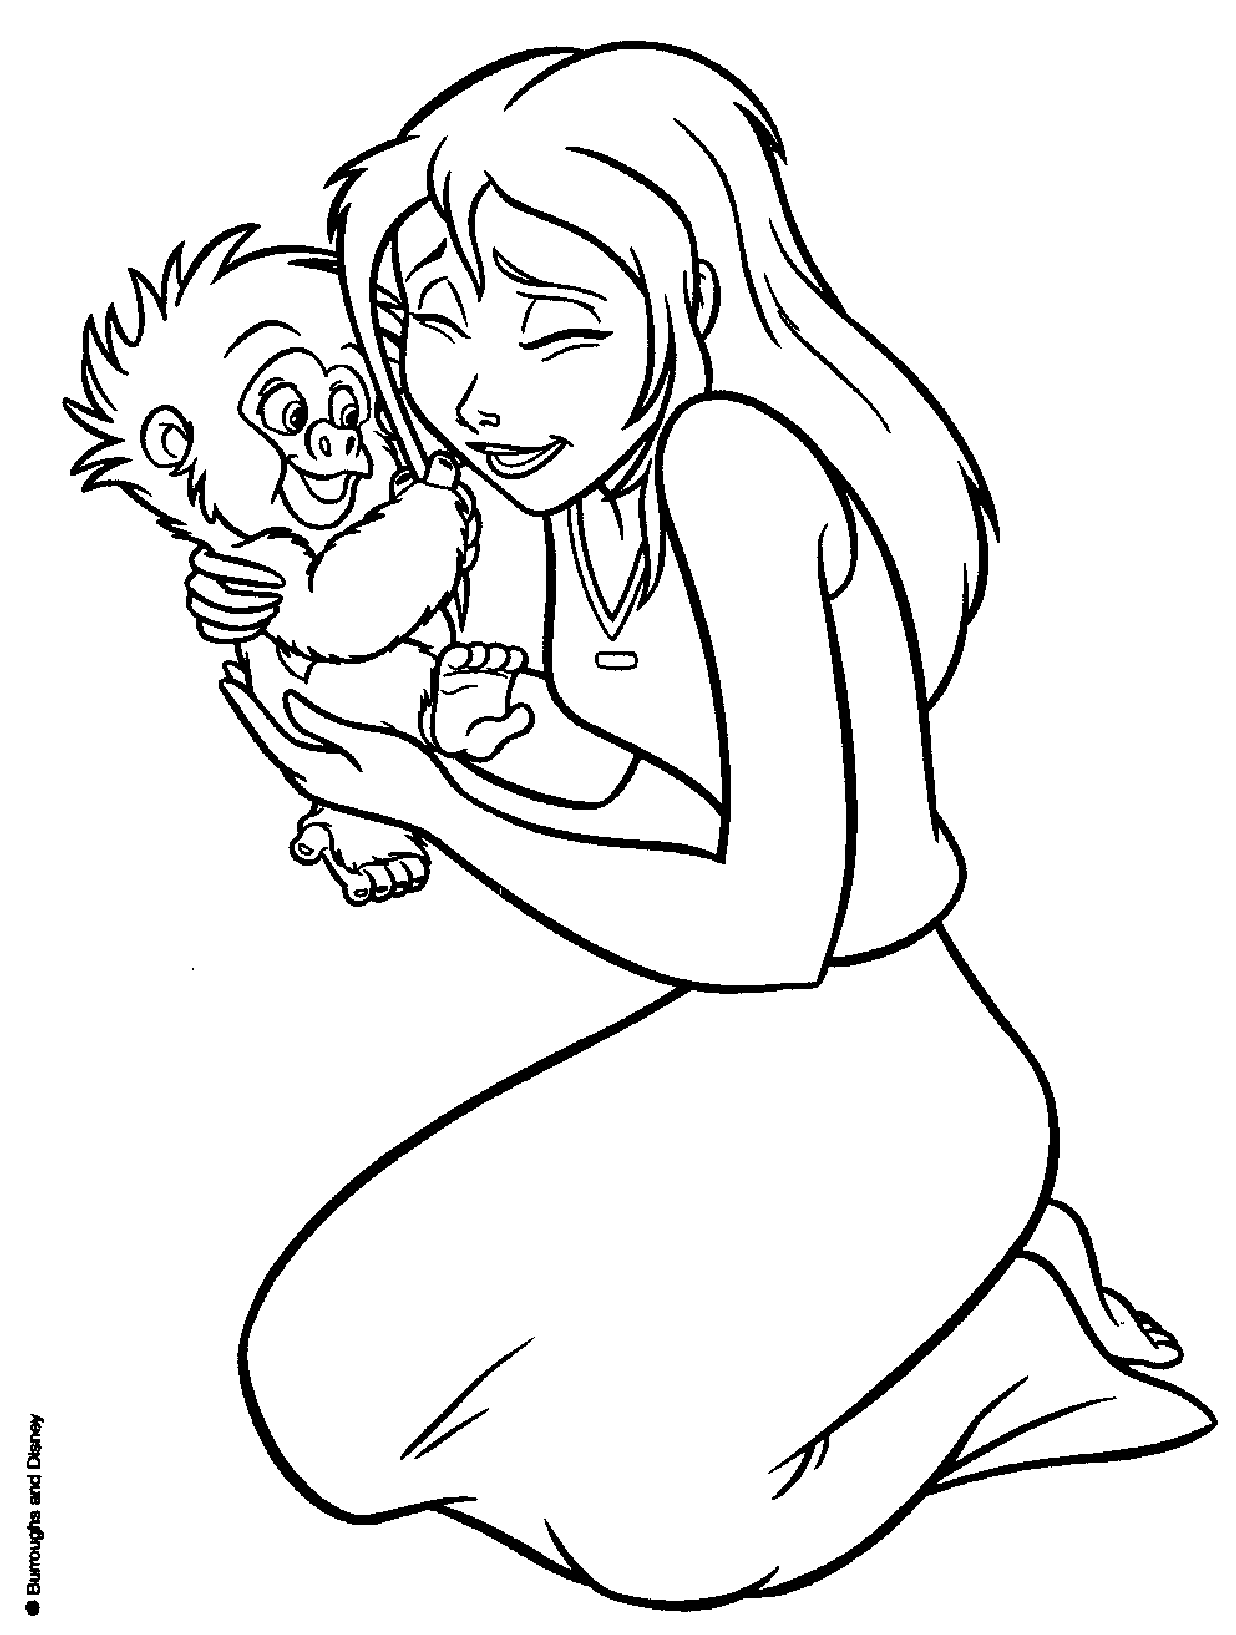 Jane avec un bébé singe